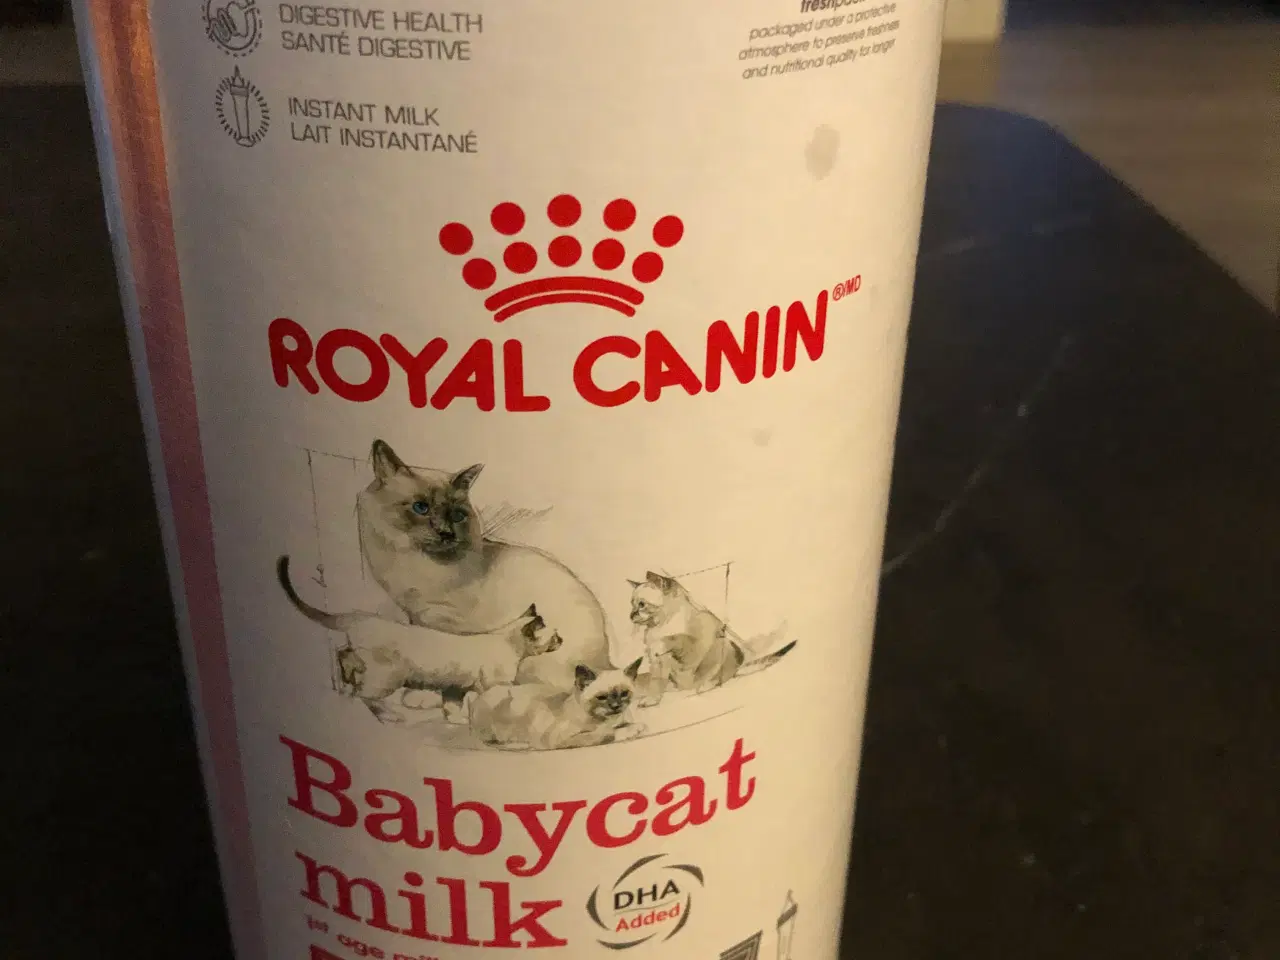 Billede 1 - Babycat milk med sutteflaske